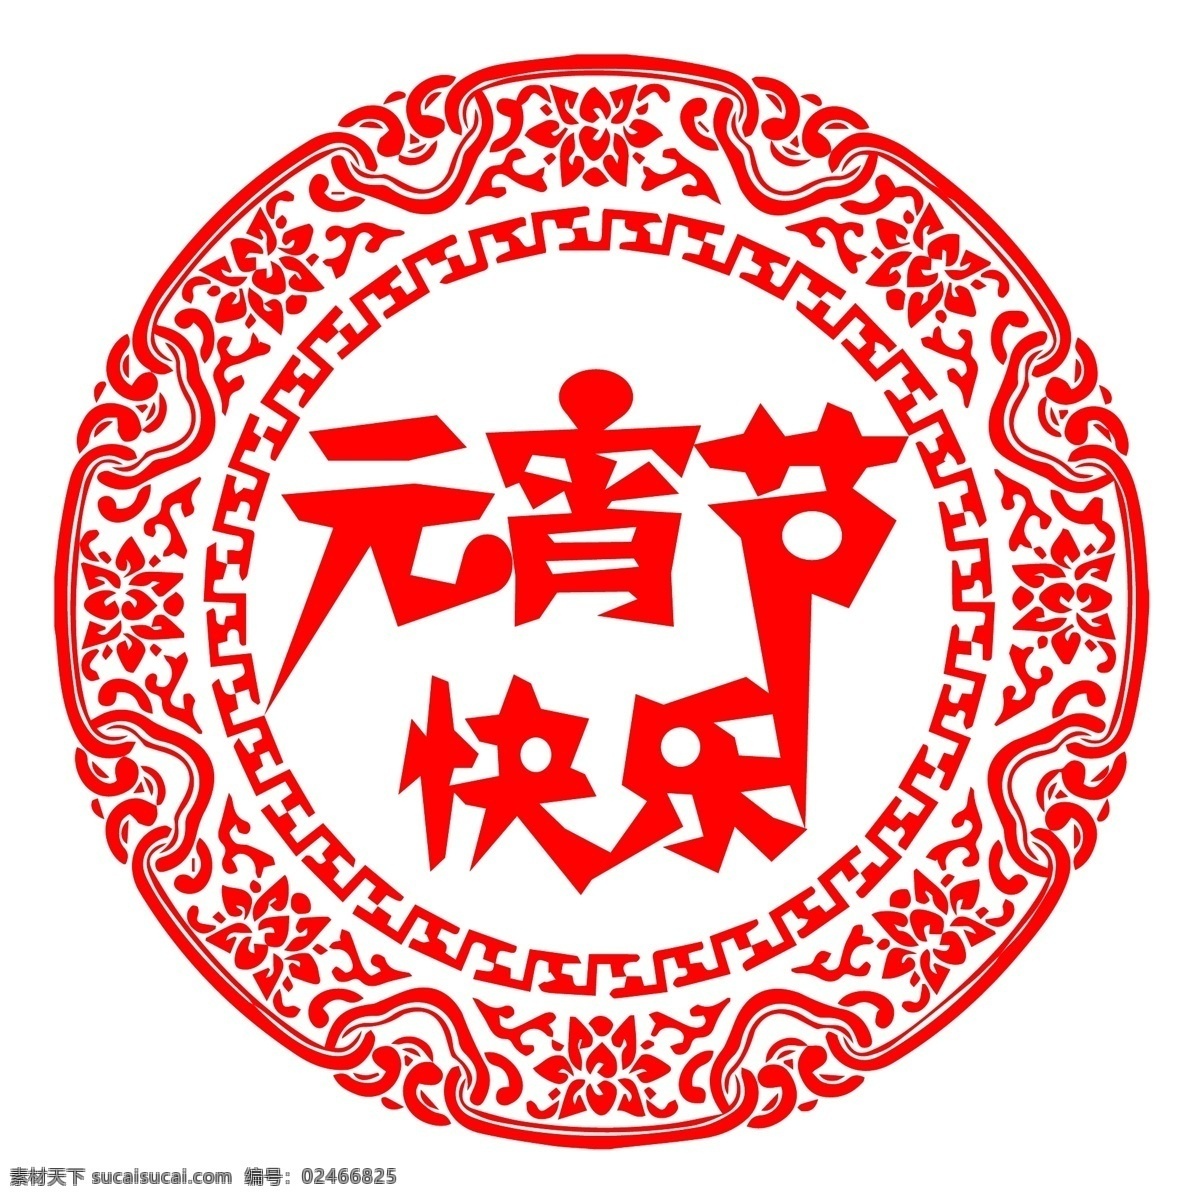 元宵节 快乐 字体 元宵节快乐 字体设计 红色剪纸 节日素材 汤圆 正月十五 网页设计 艺术字 矢量素材 白色